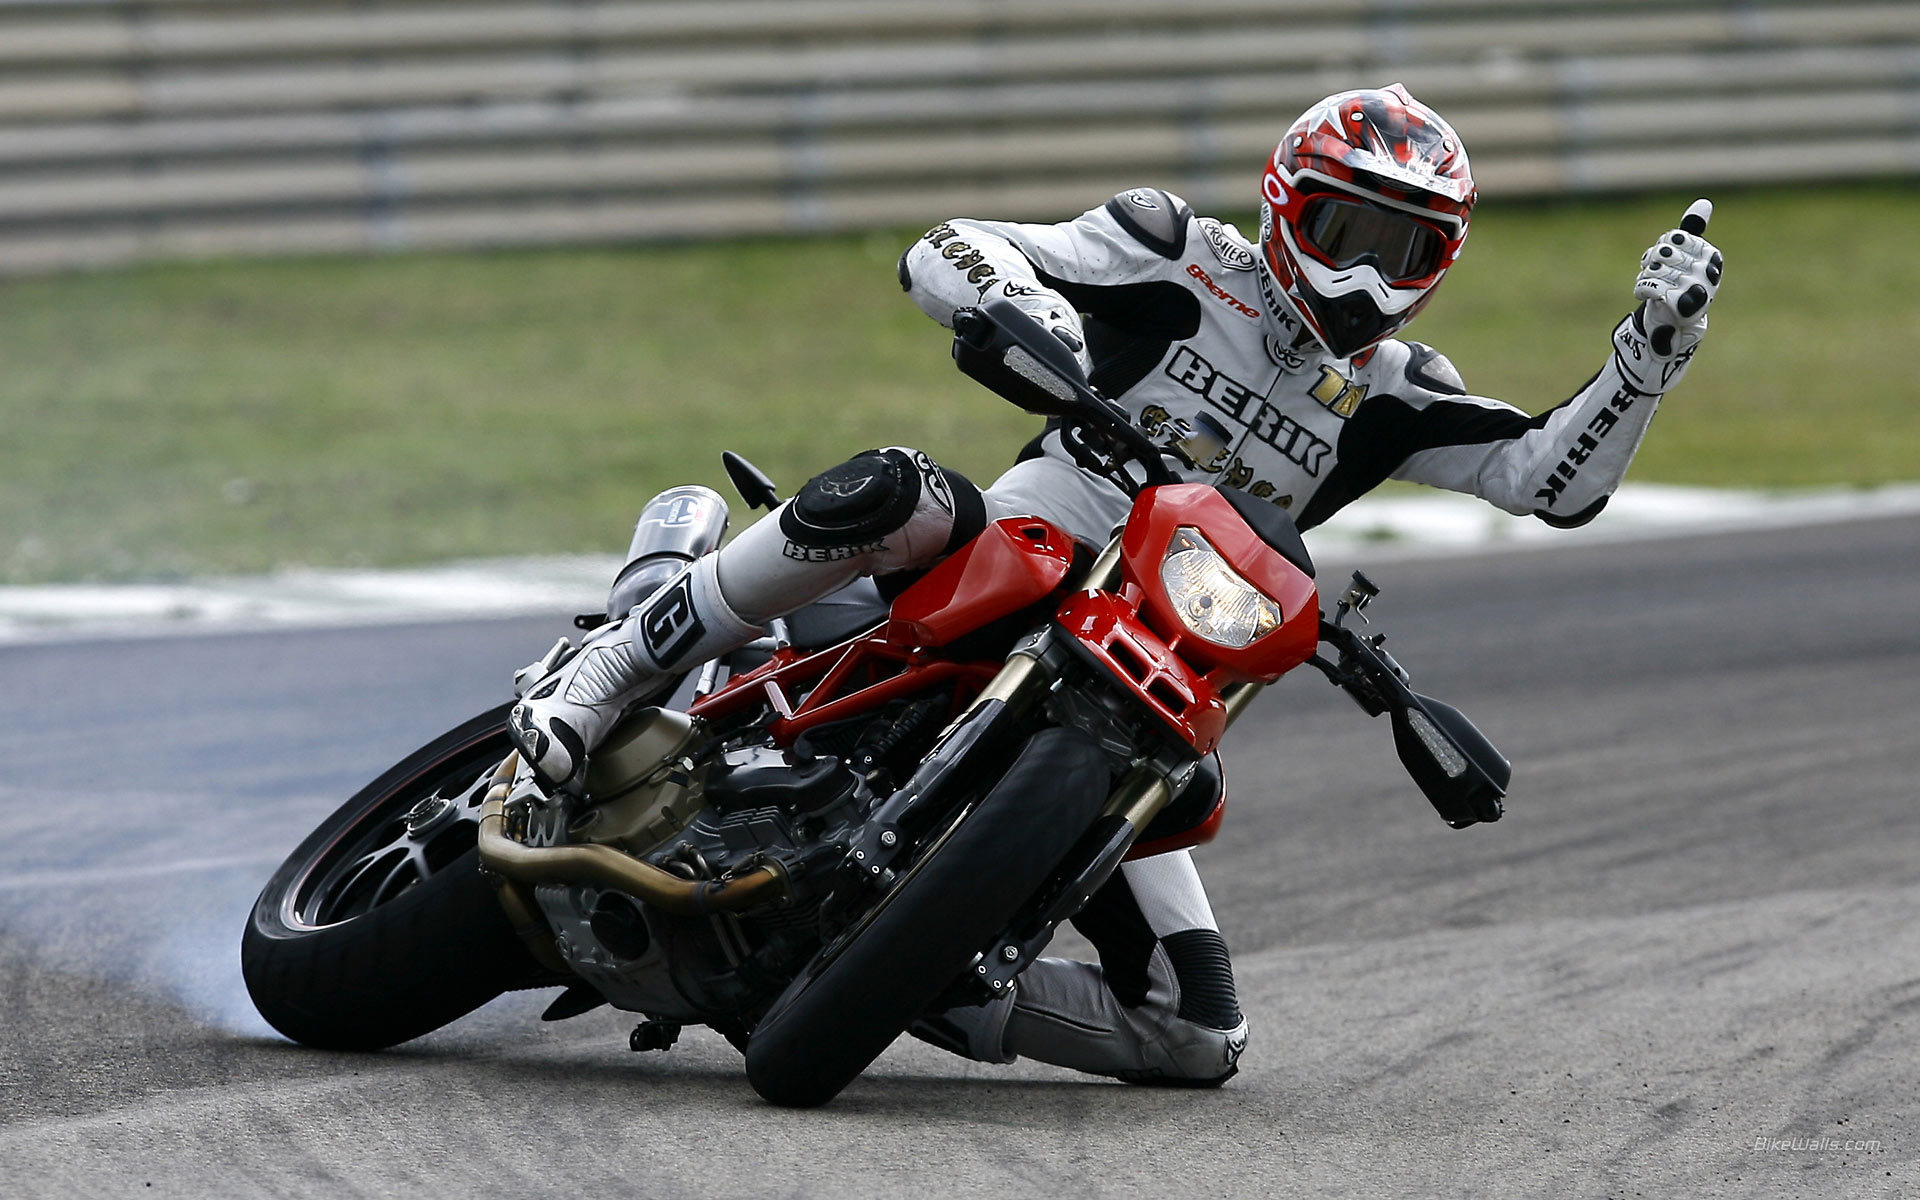 Новый надежный мотоцикл Ducati Hypermotard